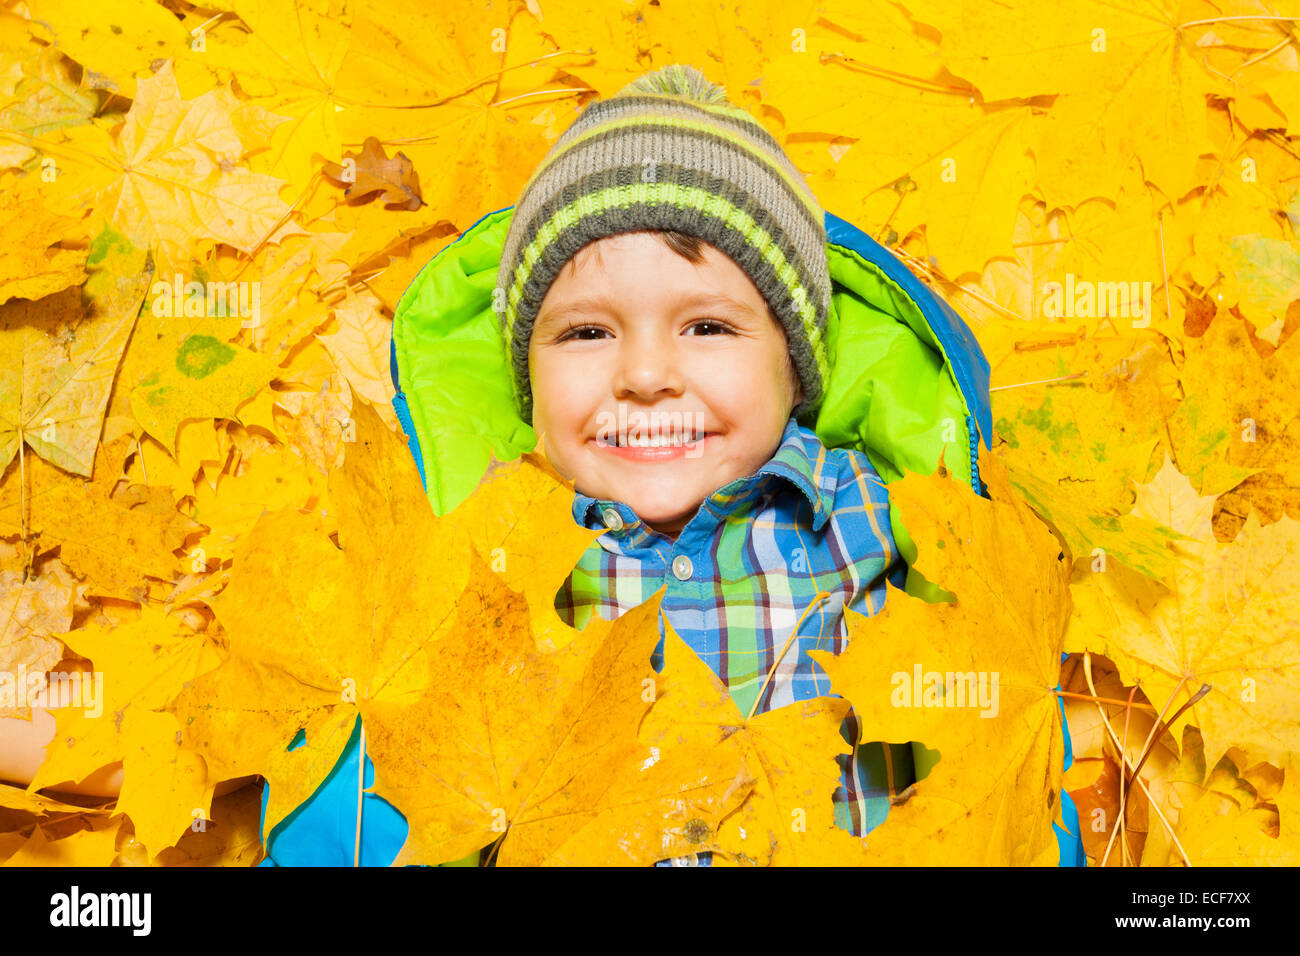 Happy little boy laying quatre ans dans les feuilles d'automne jaune, souriant et couverte de certains d'entre eux Banque D'Images